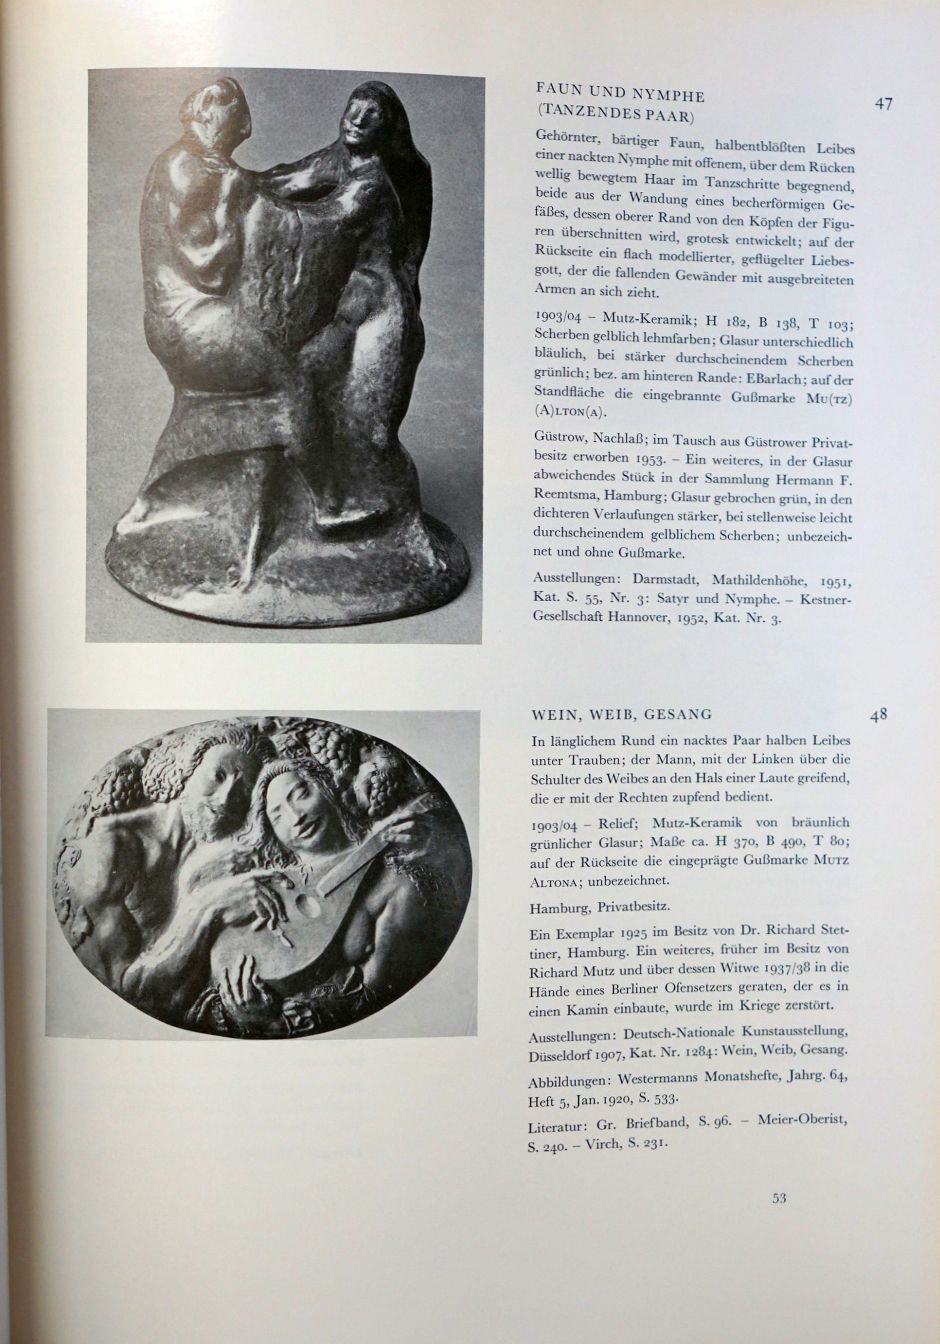 Lot 3010, Auction  115, Schult, Friedrich und Barlach, Ernst, Ernst Barlach - Werkverzeichnis Bd I und II.